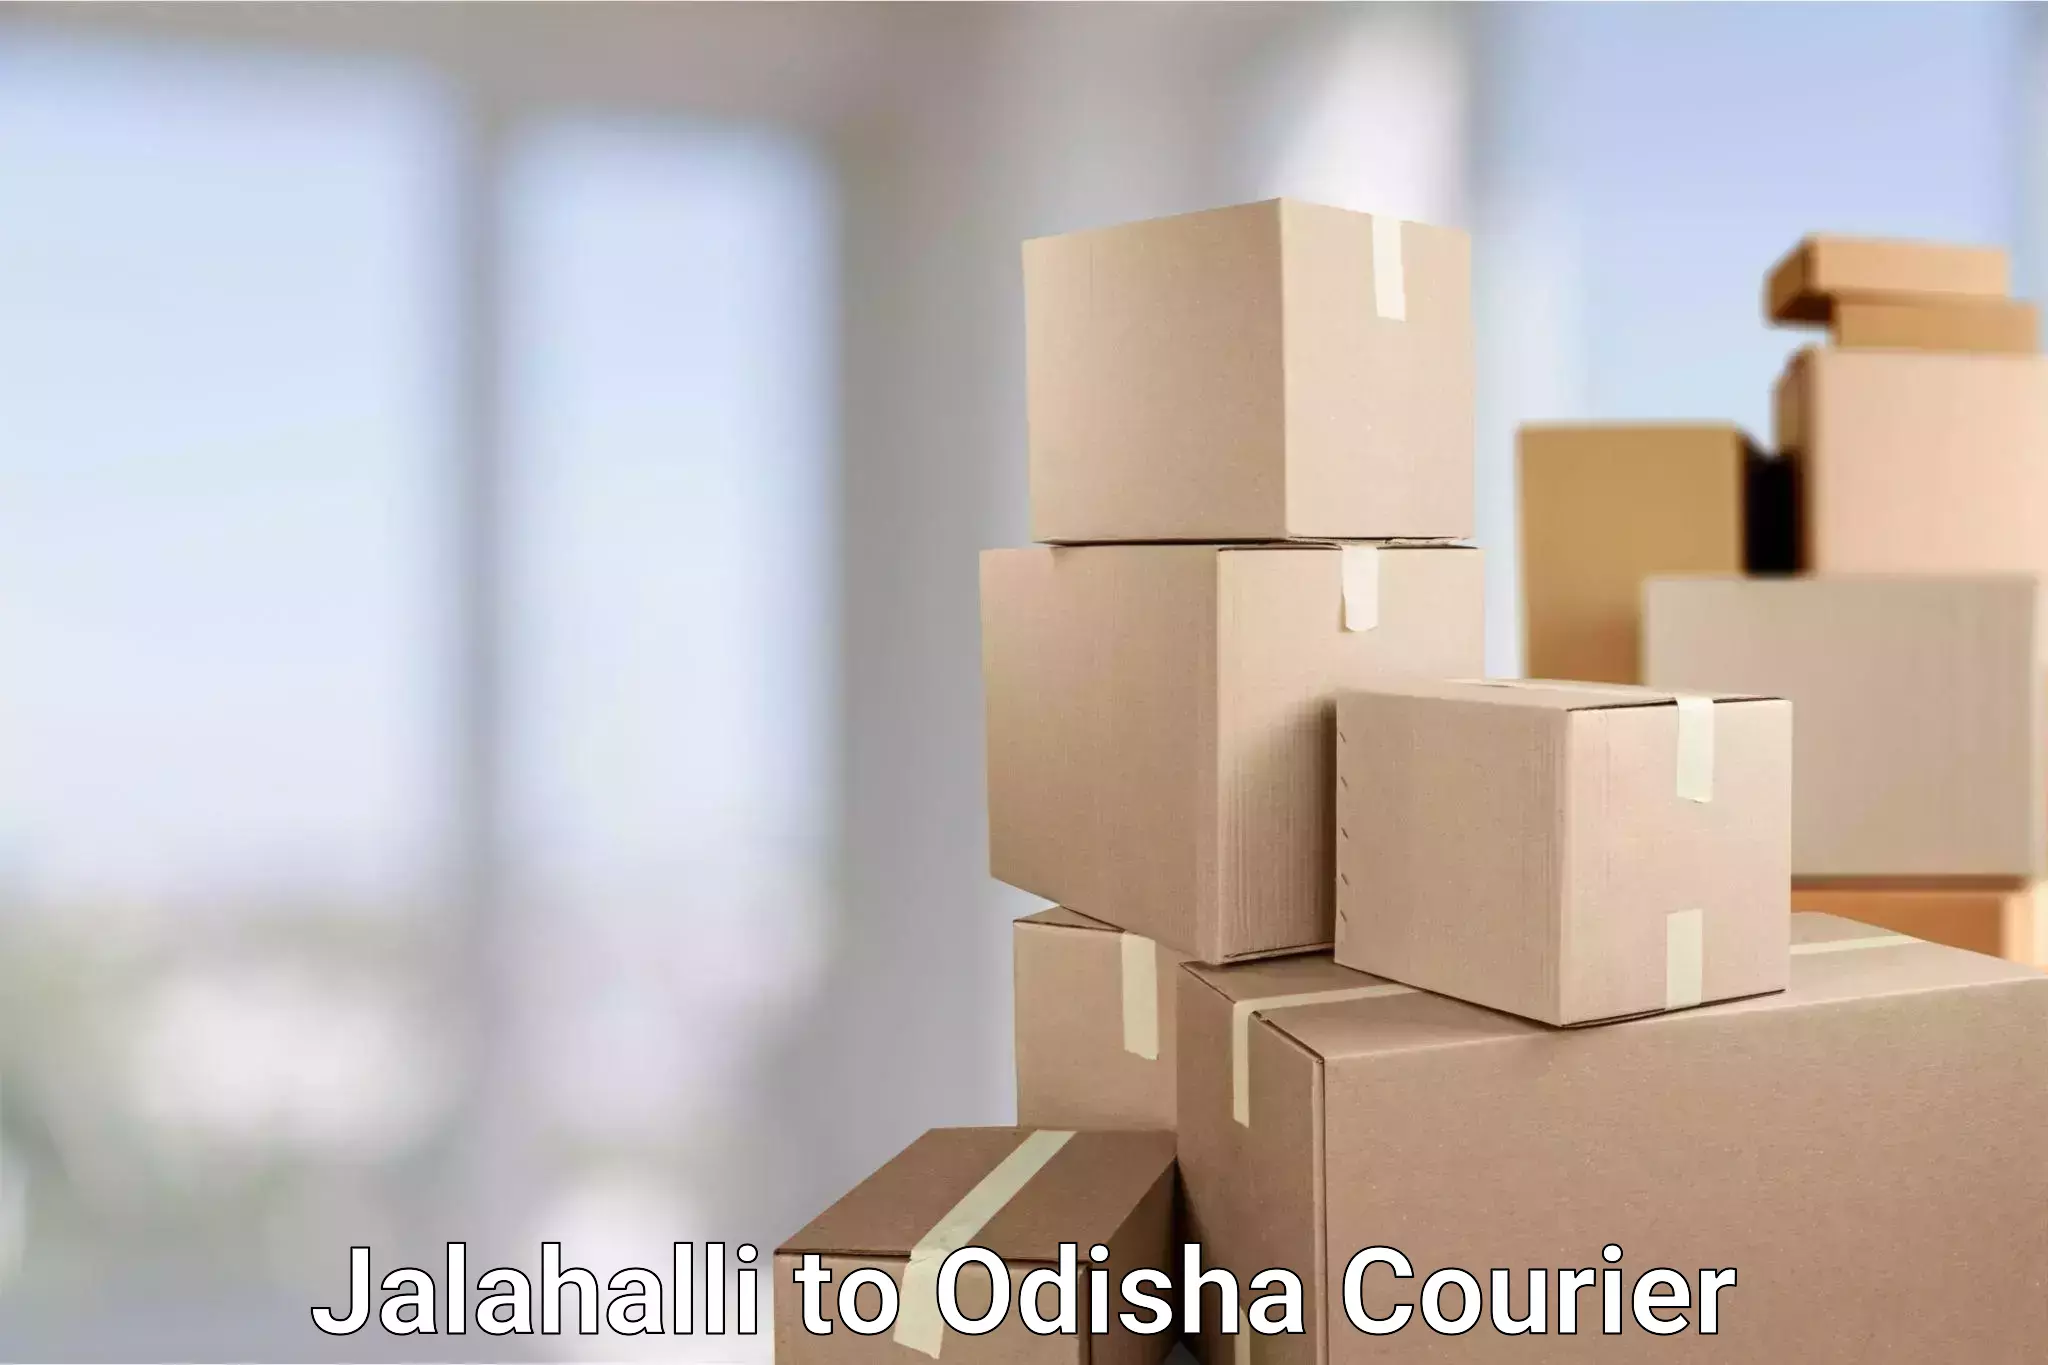 Global shipping networks Jalahalli to Joda